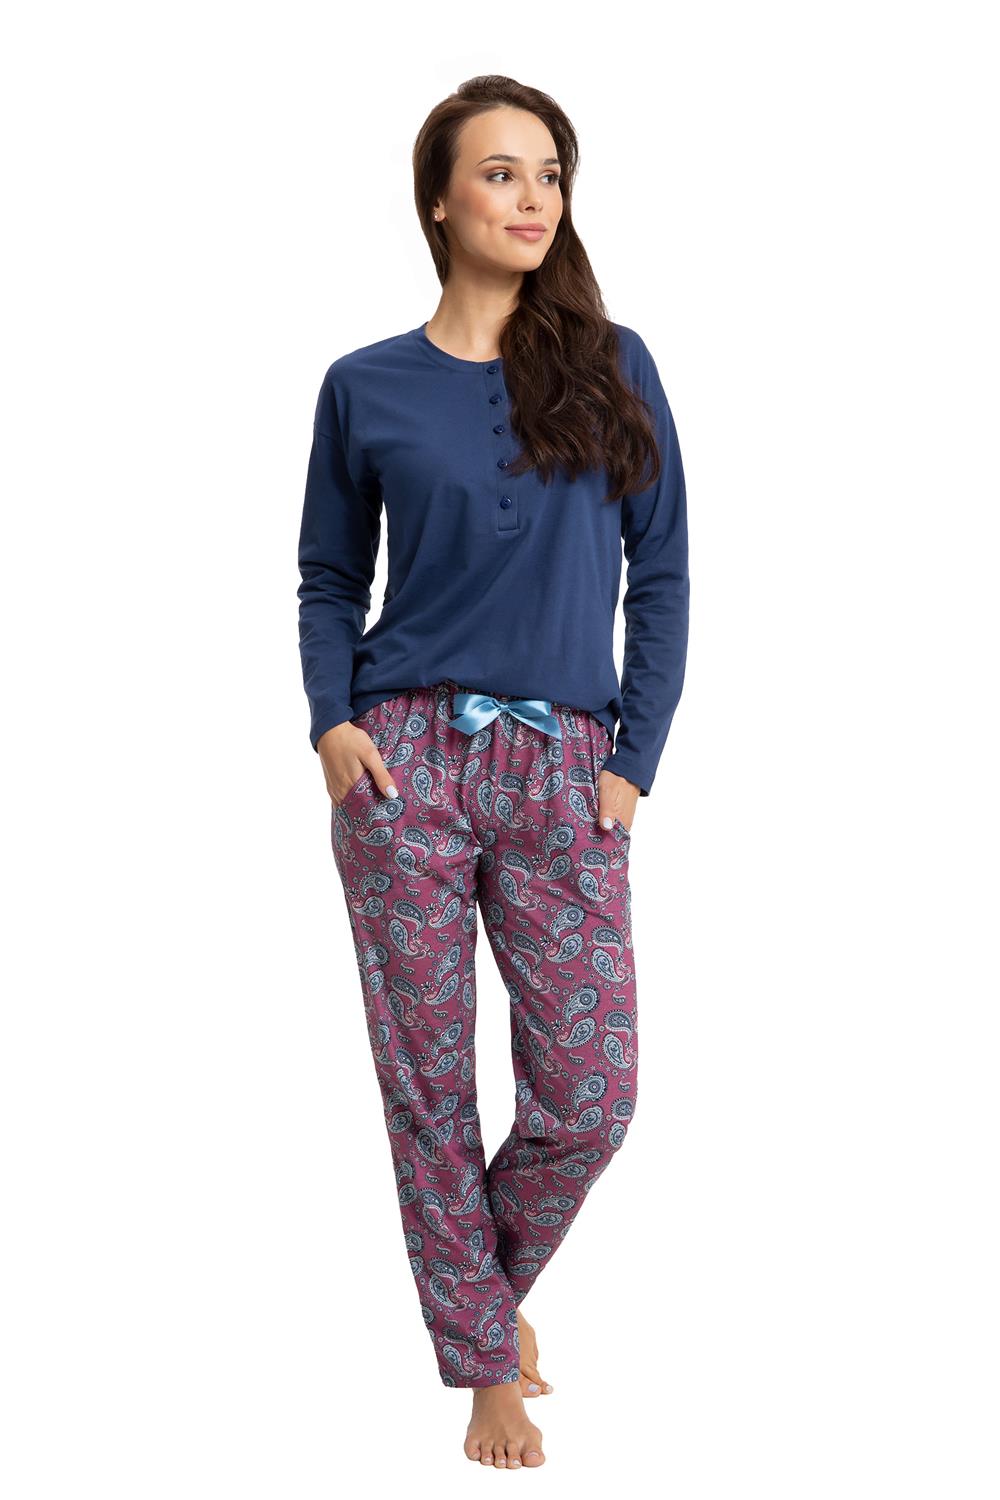 Oriental Simplicity bride Pijama pentru femei LUNA 617 polo albastru marin cu nasturi in jos /  pantaloni cu model paisley carmin - eMAG.ro